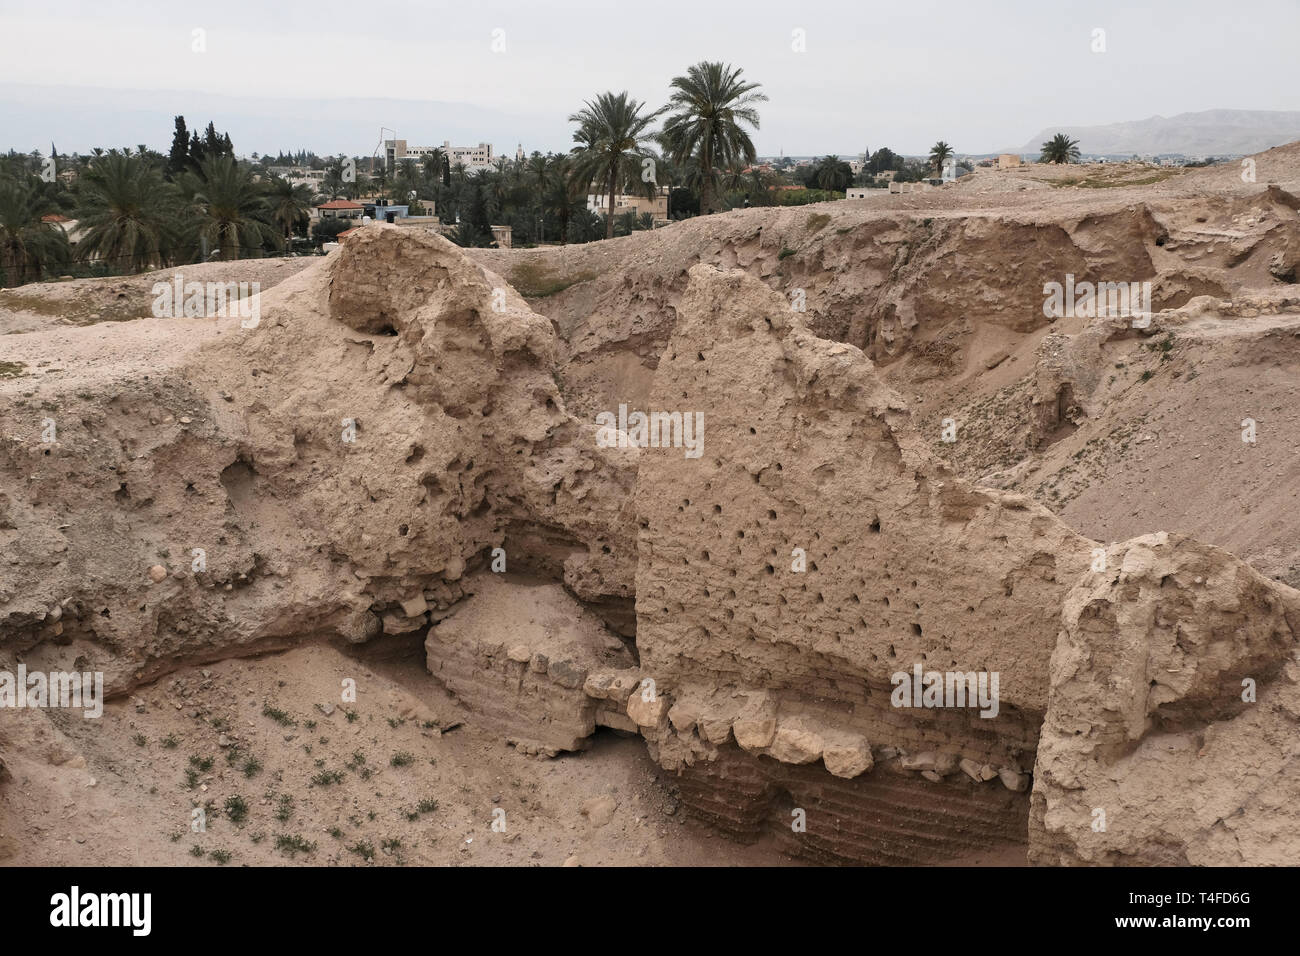 Baugrundlagen wurden in Tell es-Sultan, einem UNESCO-Weltkulturerbe, gefunden, prähistorische Ruinen einer der ältesten bekannten dauerhaften Siedlungen, die aus dem Jahr 10.000 v. Chr. stammt und als „älteste Stadt der Welt“ bezeichnet wurde, die sich in der Stadt Jericho im Westjordanland, Israel, befindet. Stockfoto